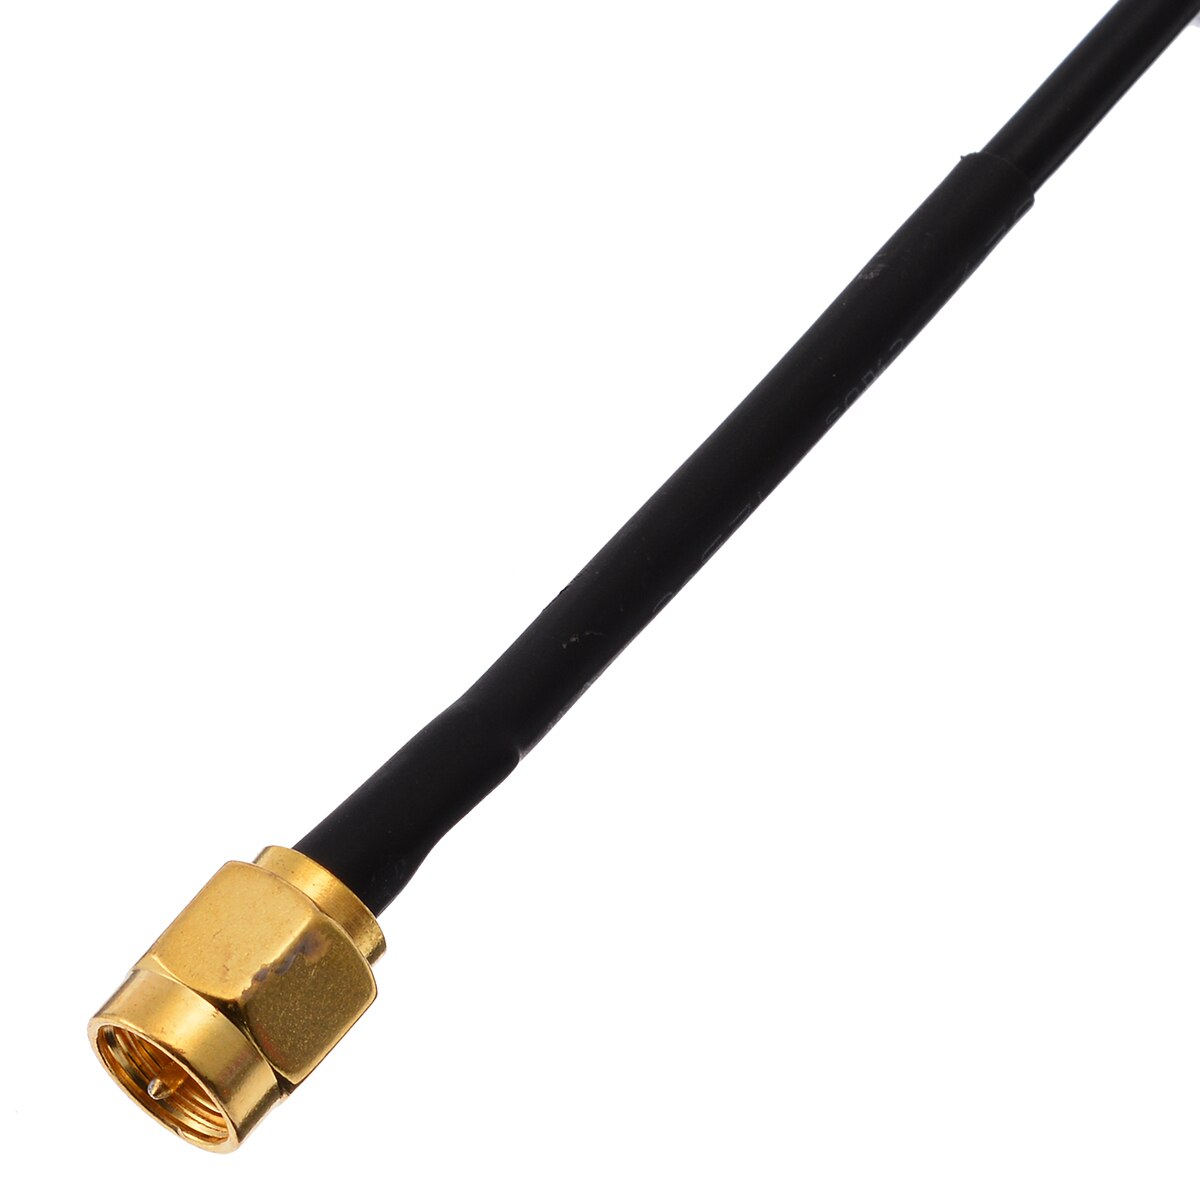 1 sæt universal bil fm / am dab + antenne antenne splitter adapter kabel 88-108 mhz række smb konverter til bilradio